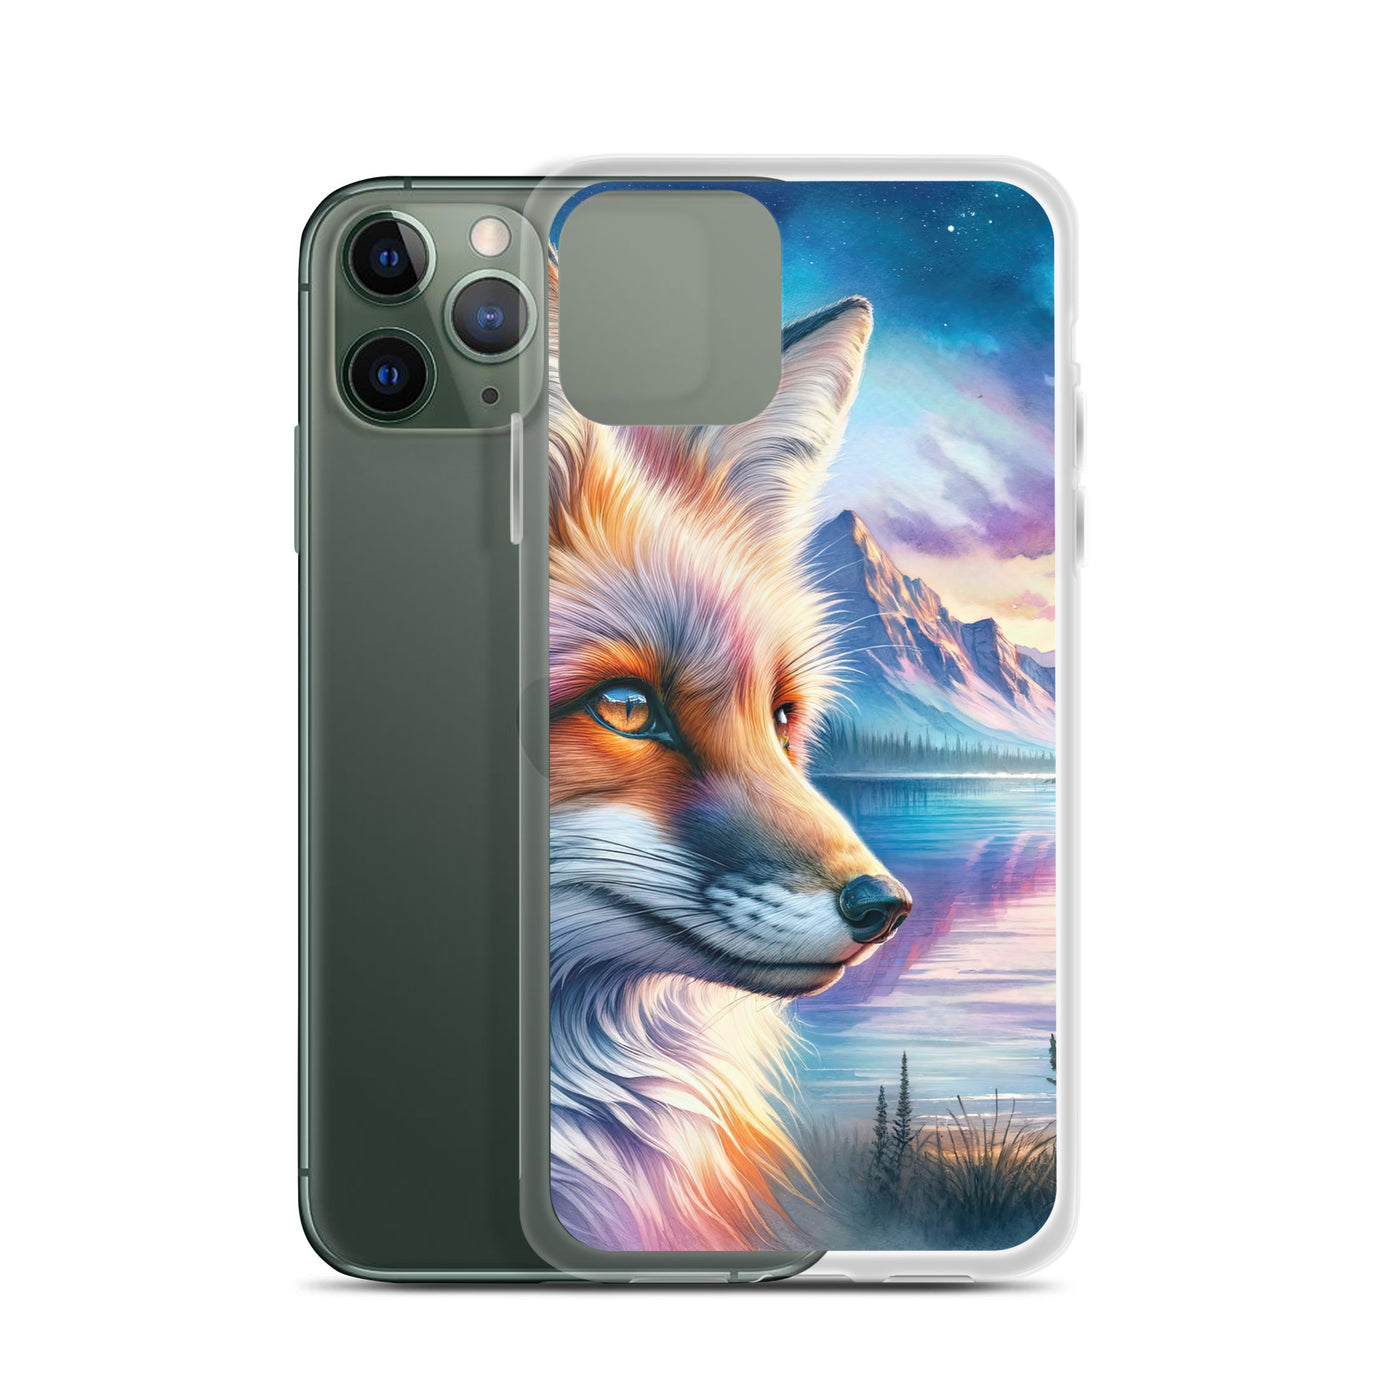 Aquarellporträt eines Fuchses im Dämmerlicht am Bergsee - iPhone Schutzhülle (durchsichtig) camping xxx yyy zzz